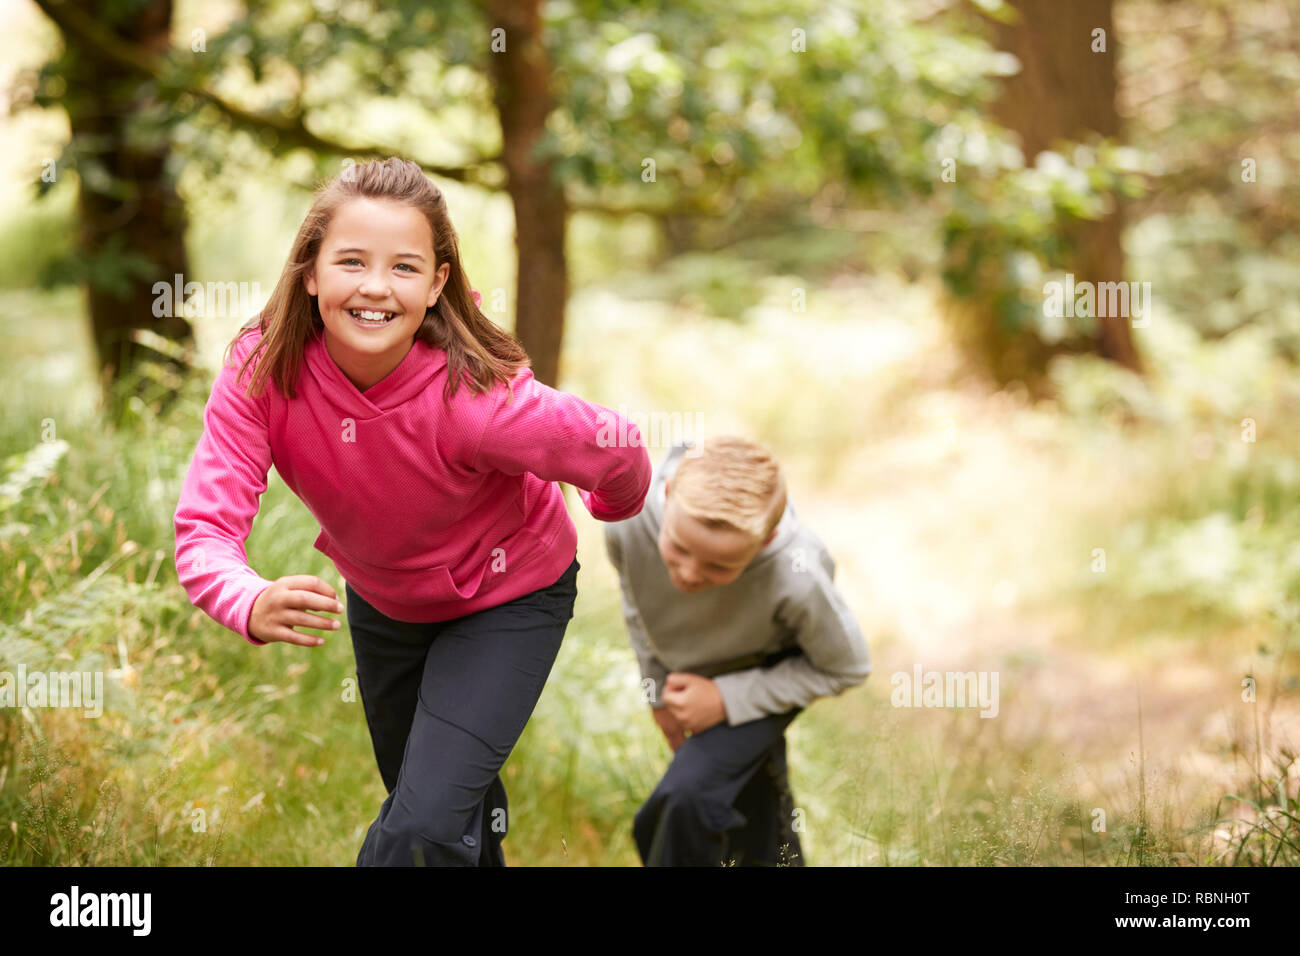 Zwei Kinder wandern in einem Wald im Grünen an der Kamera zu lächeln, Vorderansicht, Fokus auf den Vordergrund Stockfoto